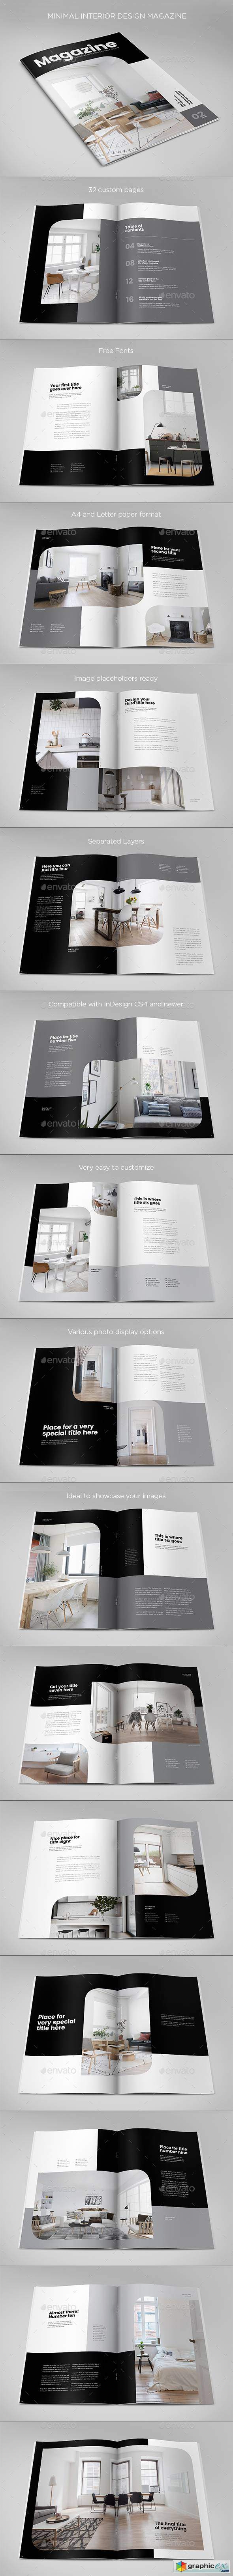 Minimal Interior Design Magazine 21630857